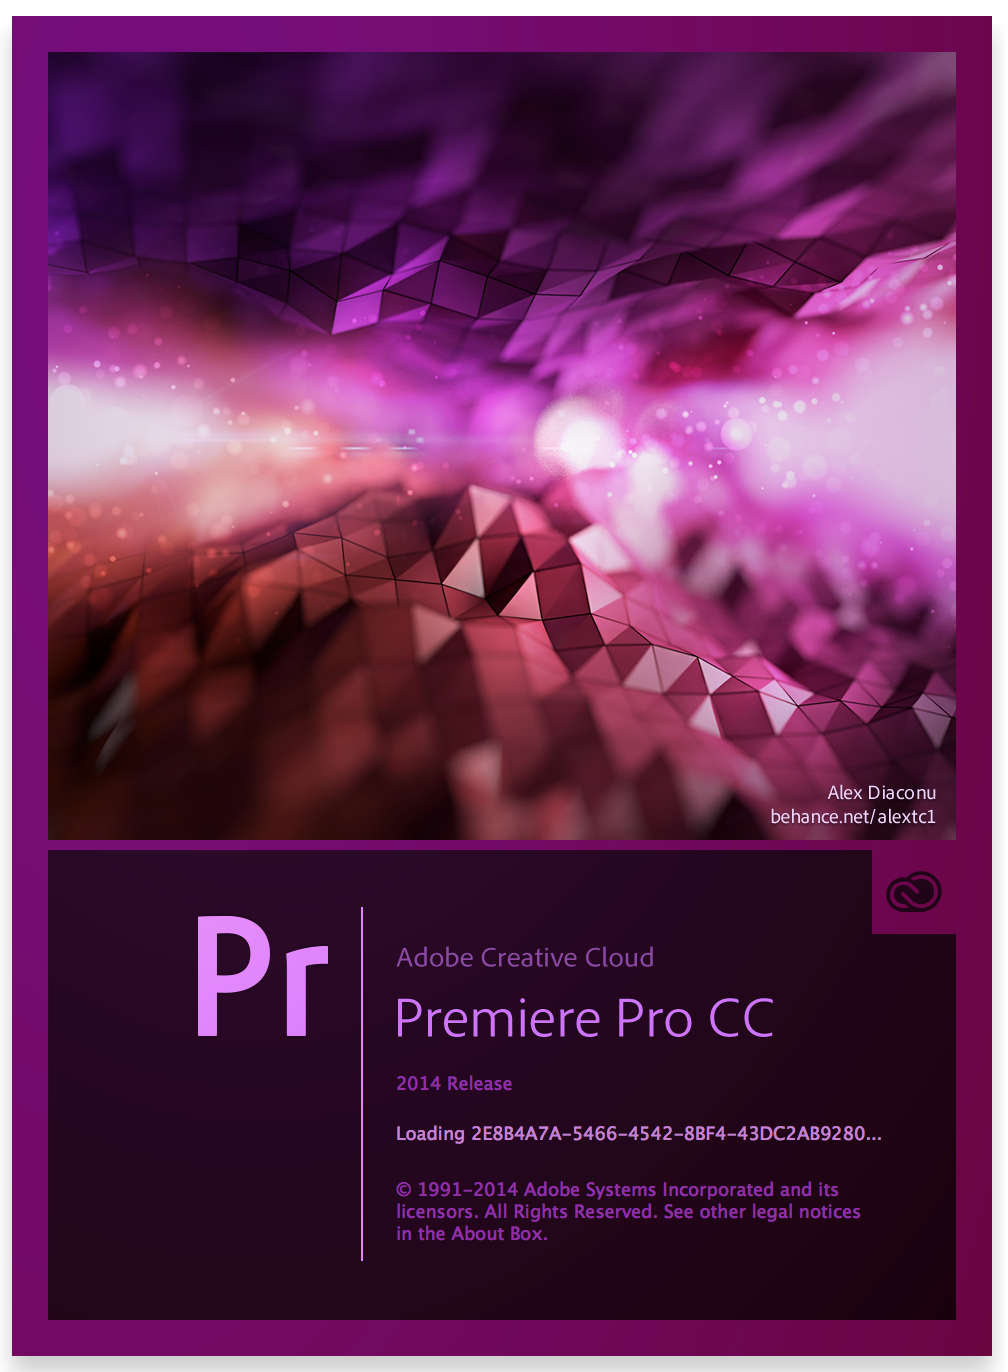 adobe premiere pro cc 2014 trial download